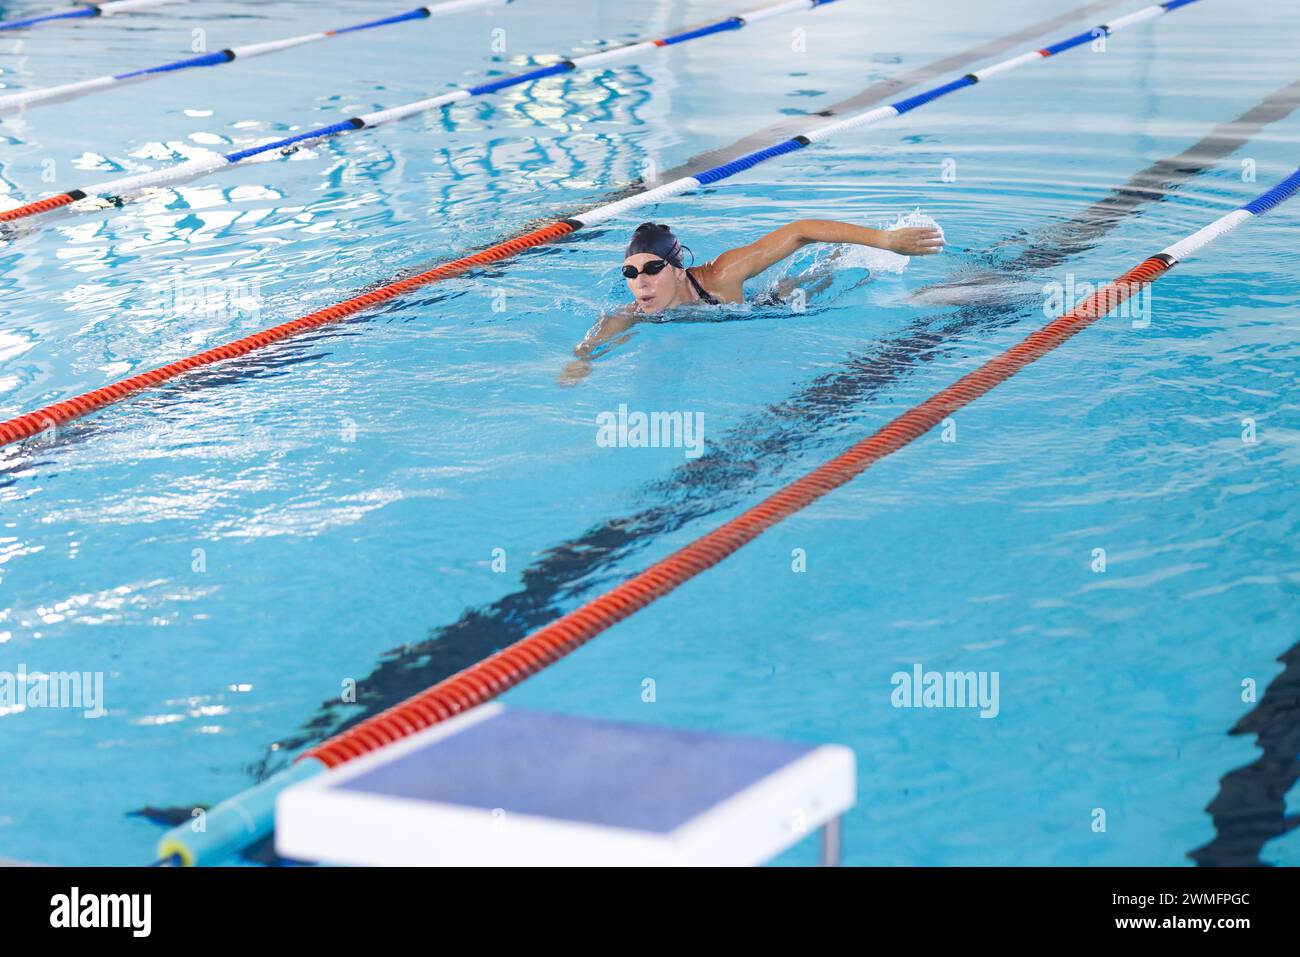 La nuotatrice caucasica nuota in piscina, mostrando la sua forma atletica Foto Stock